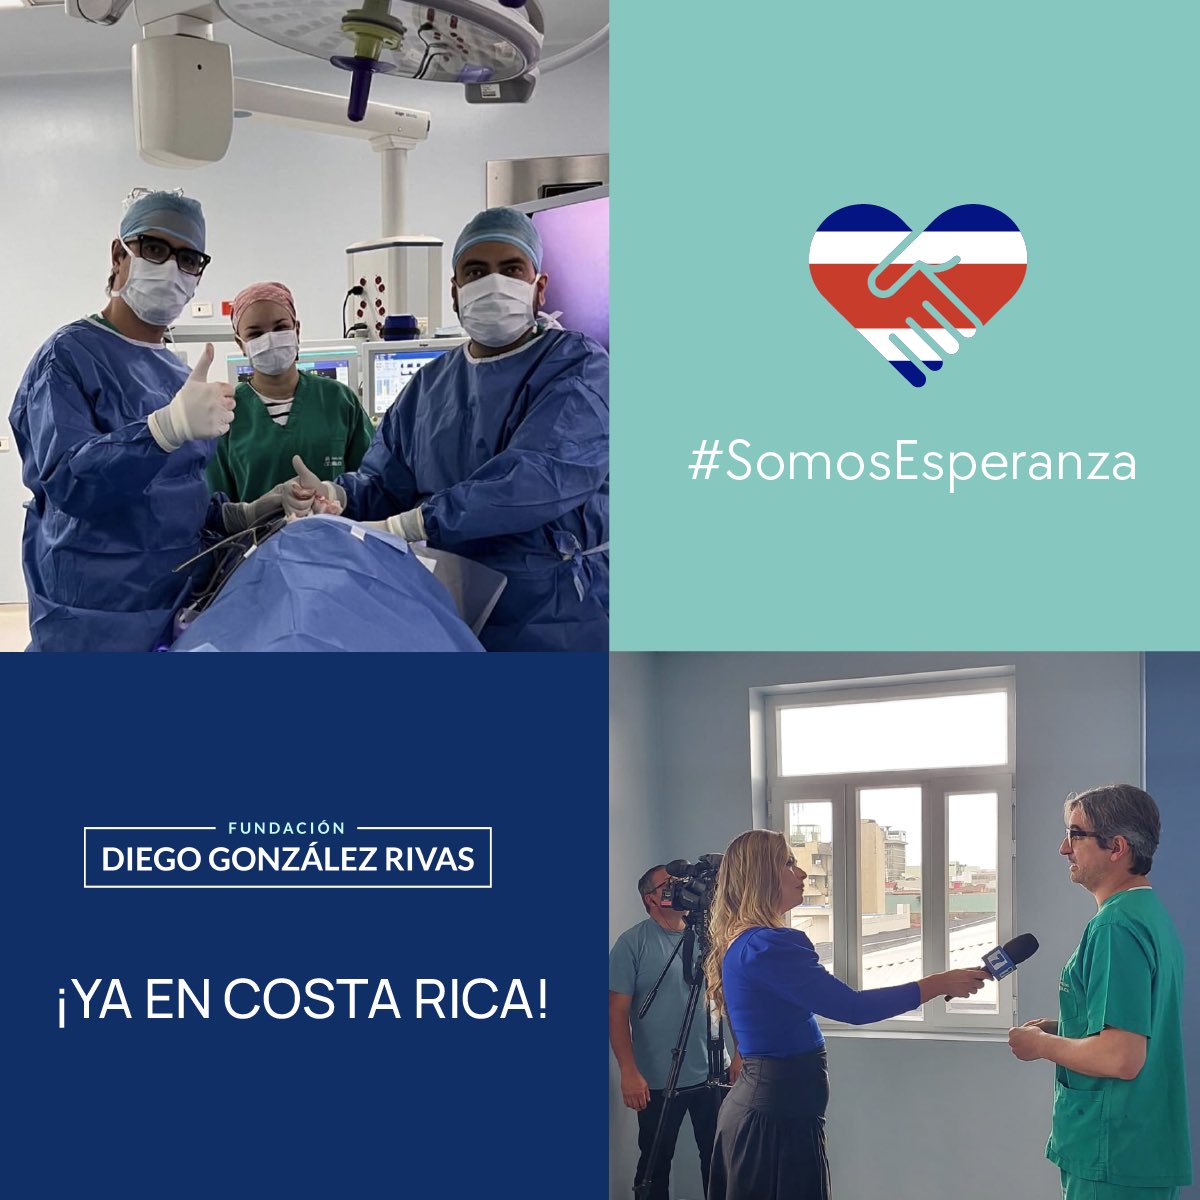 Queremos expresar nuestro agradecimiento a los medios de comunicación de Costa Rica que han dedicado su tiempo para entrevistar al Dr. Diego González Rivas. Gracias por ayudarnos a visibilizar nuestro trabajo, destacando cómo la innovación y la solidaridad pueden cambiar vidas.